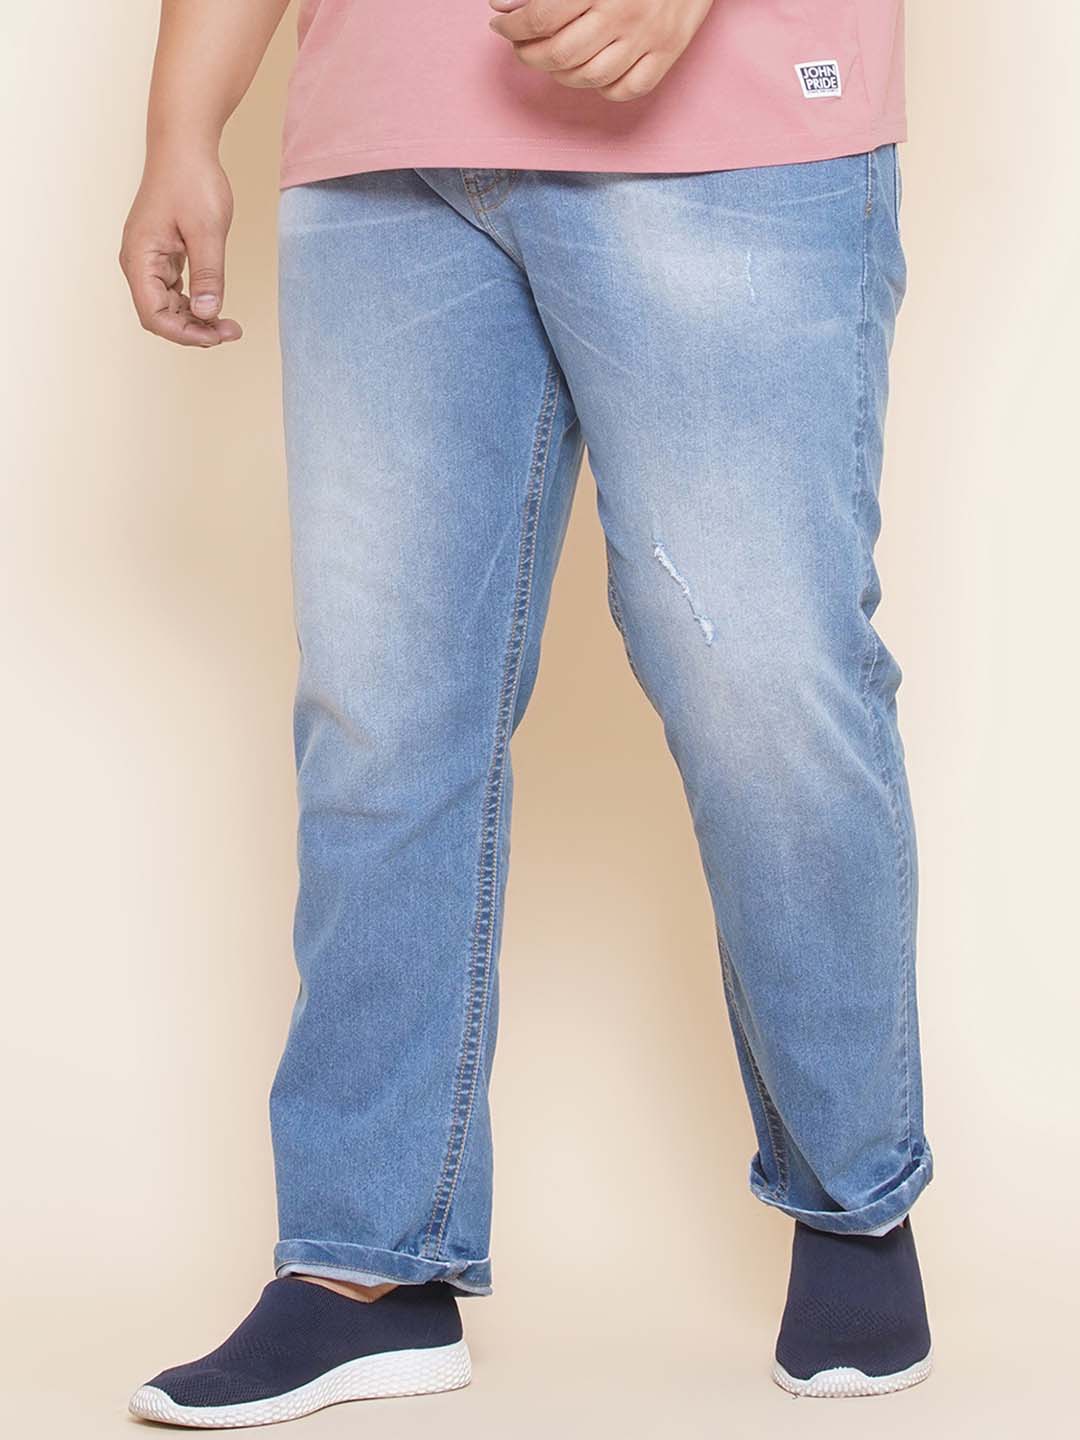 bottomwear/jeans/EJPJ25101/ejpj25101-1.jpg